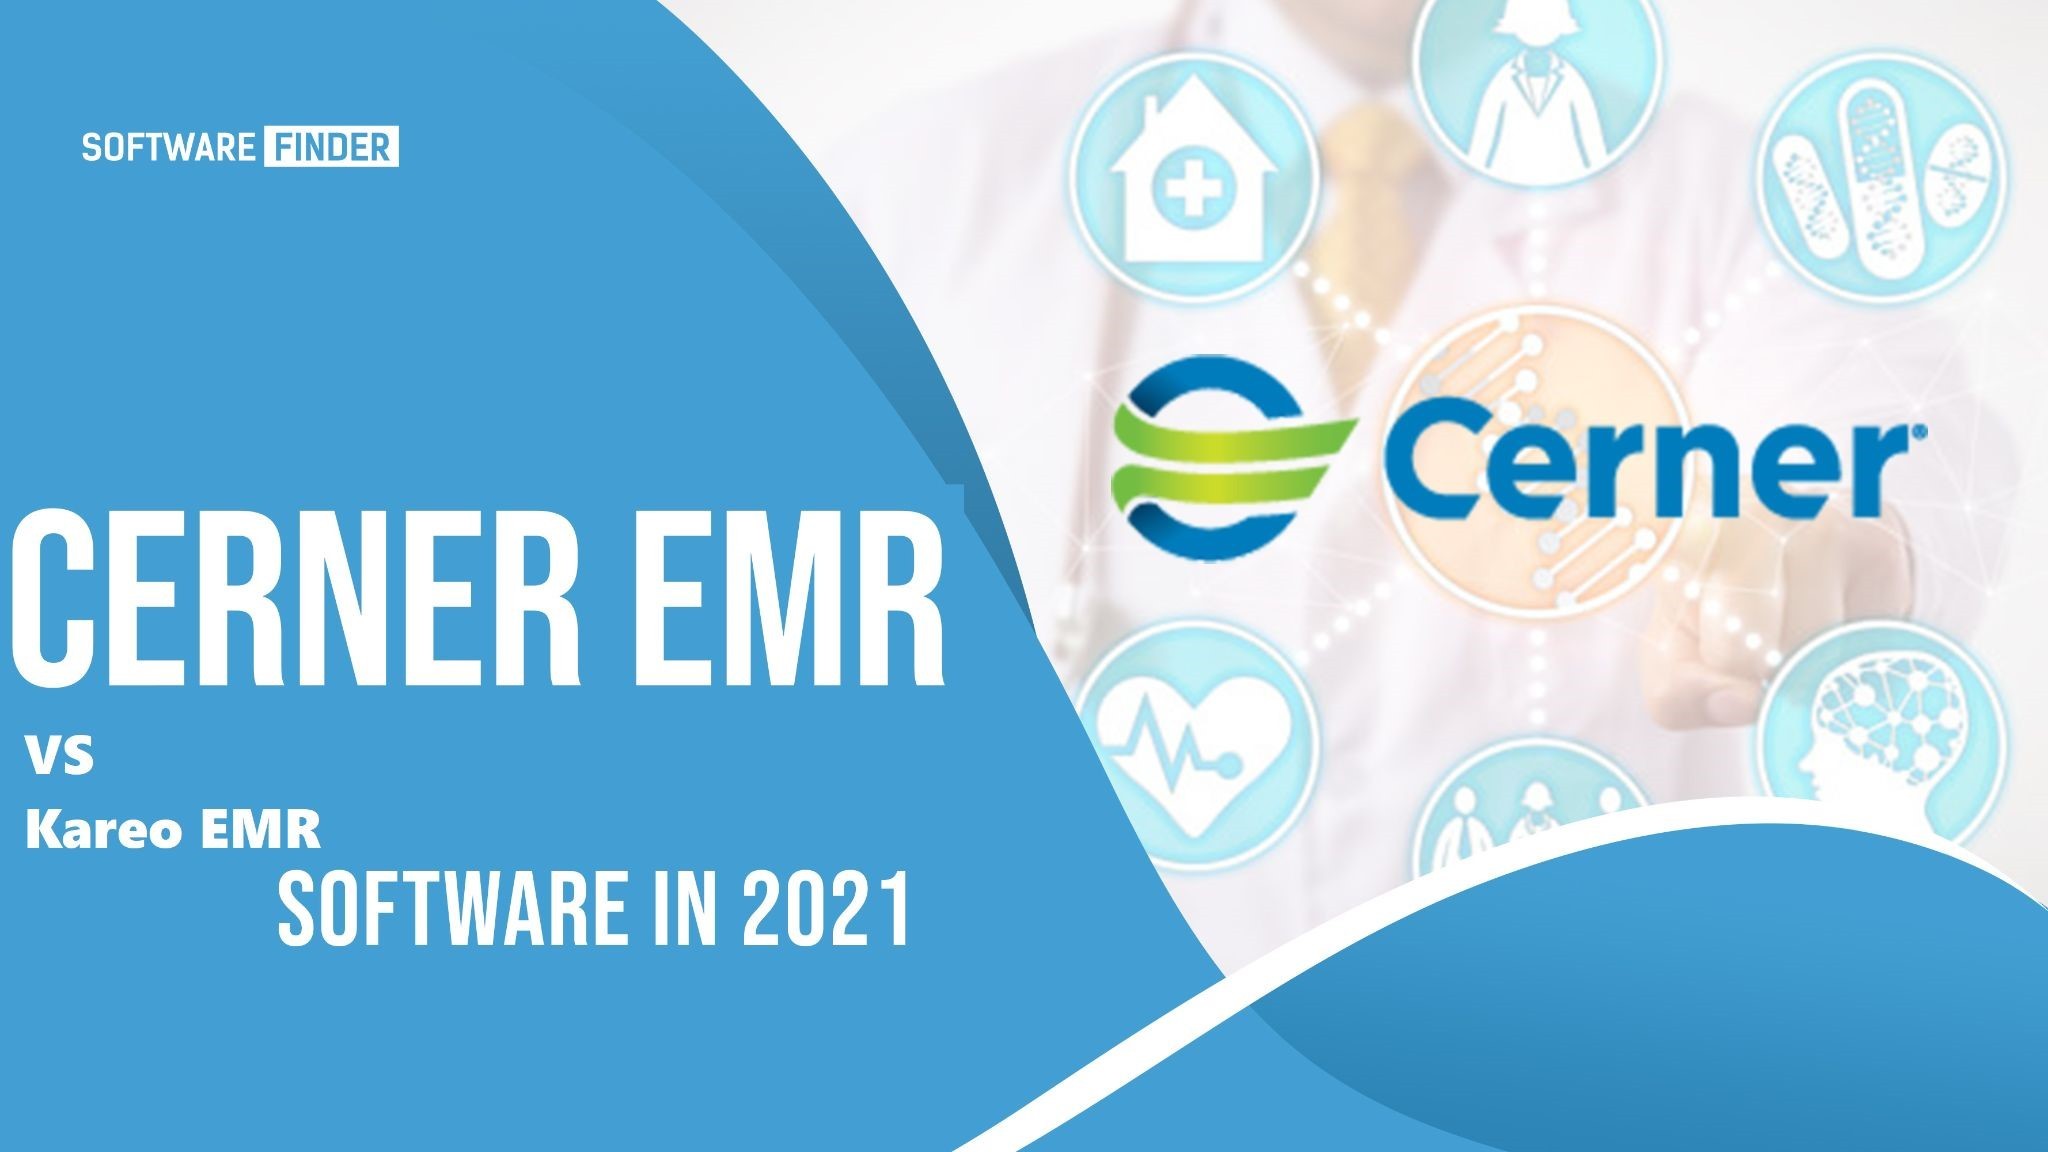 Cerner EMR vs Kareo EMR Software in 2021